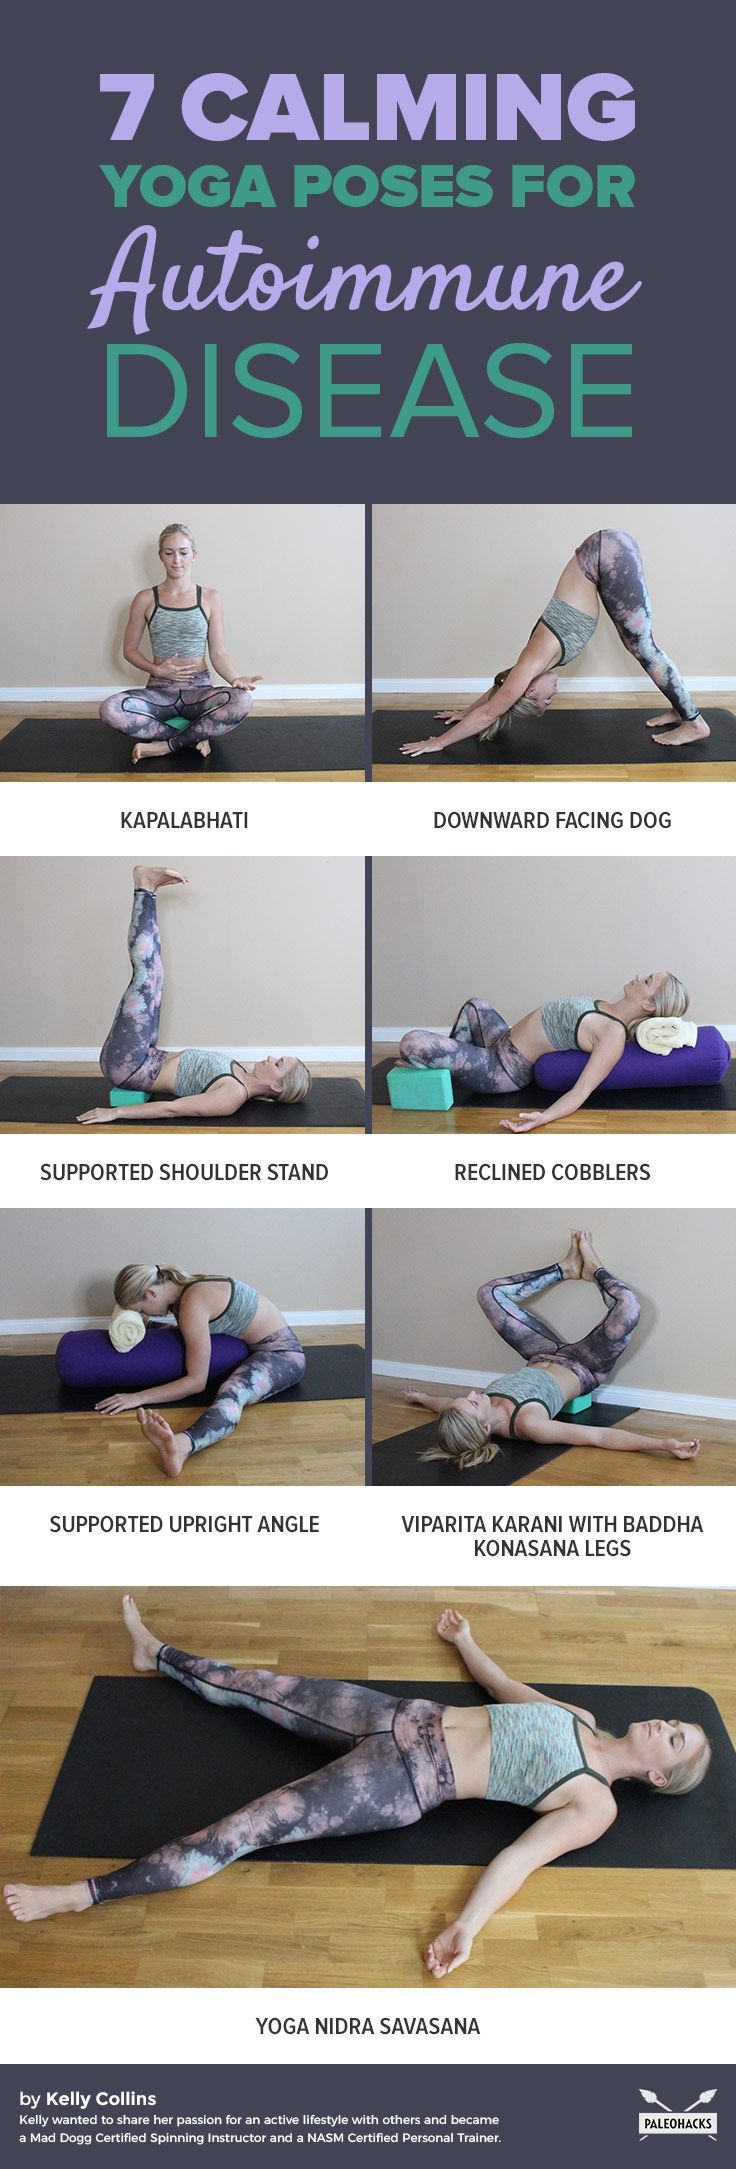 7 calming yoga poses